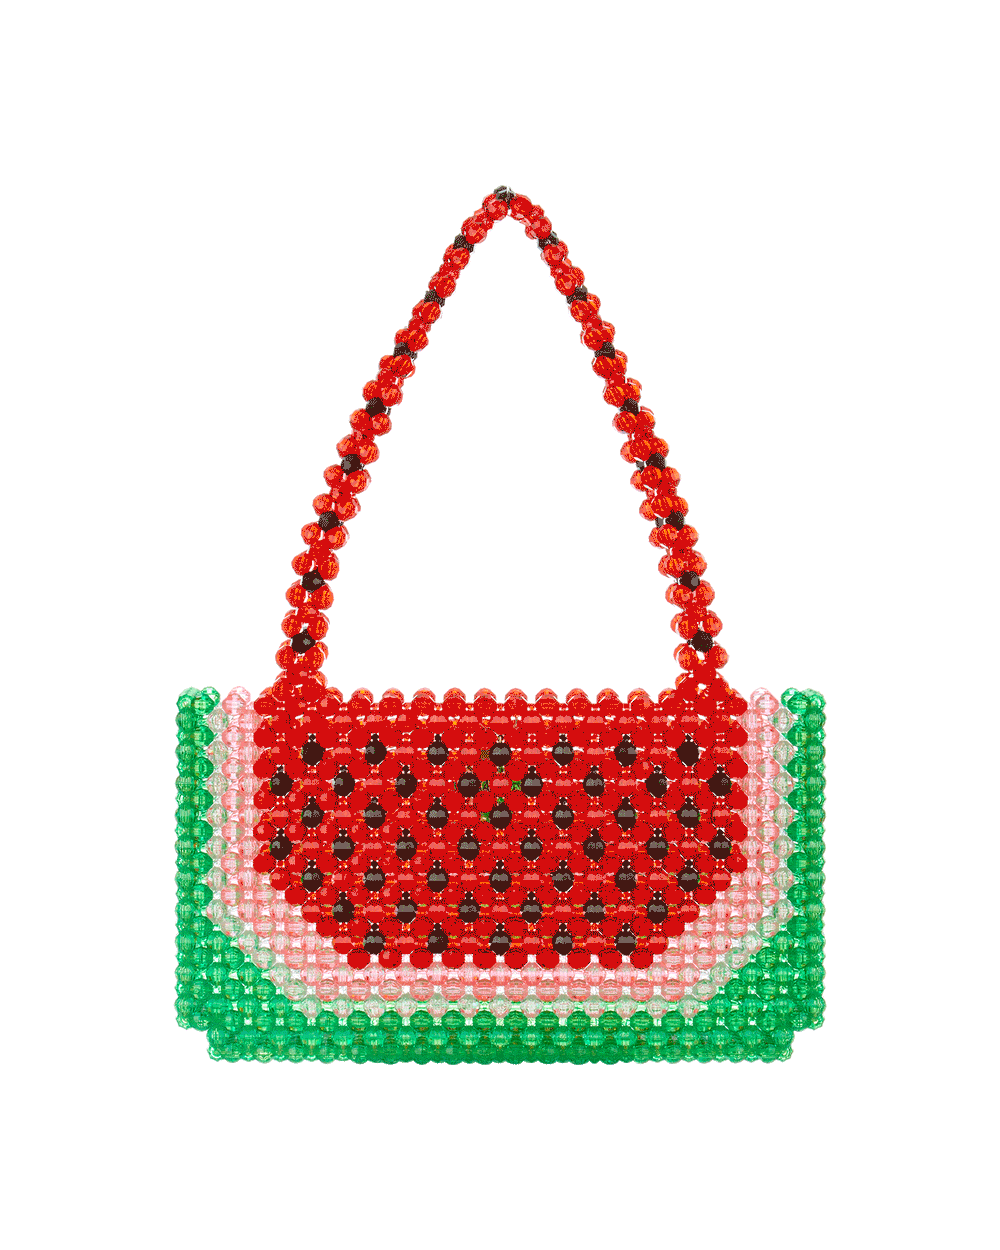 Watermelon Dream Bag